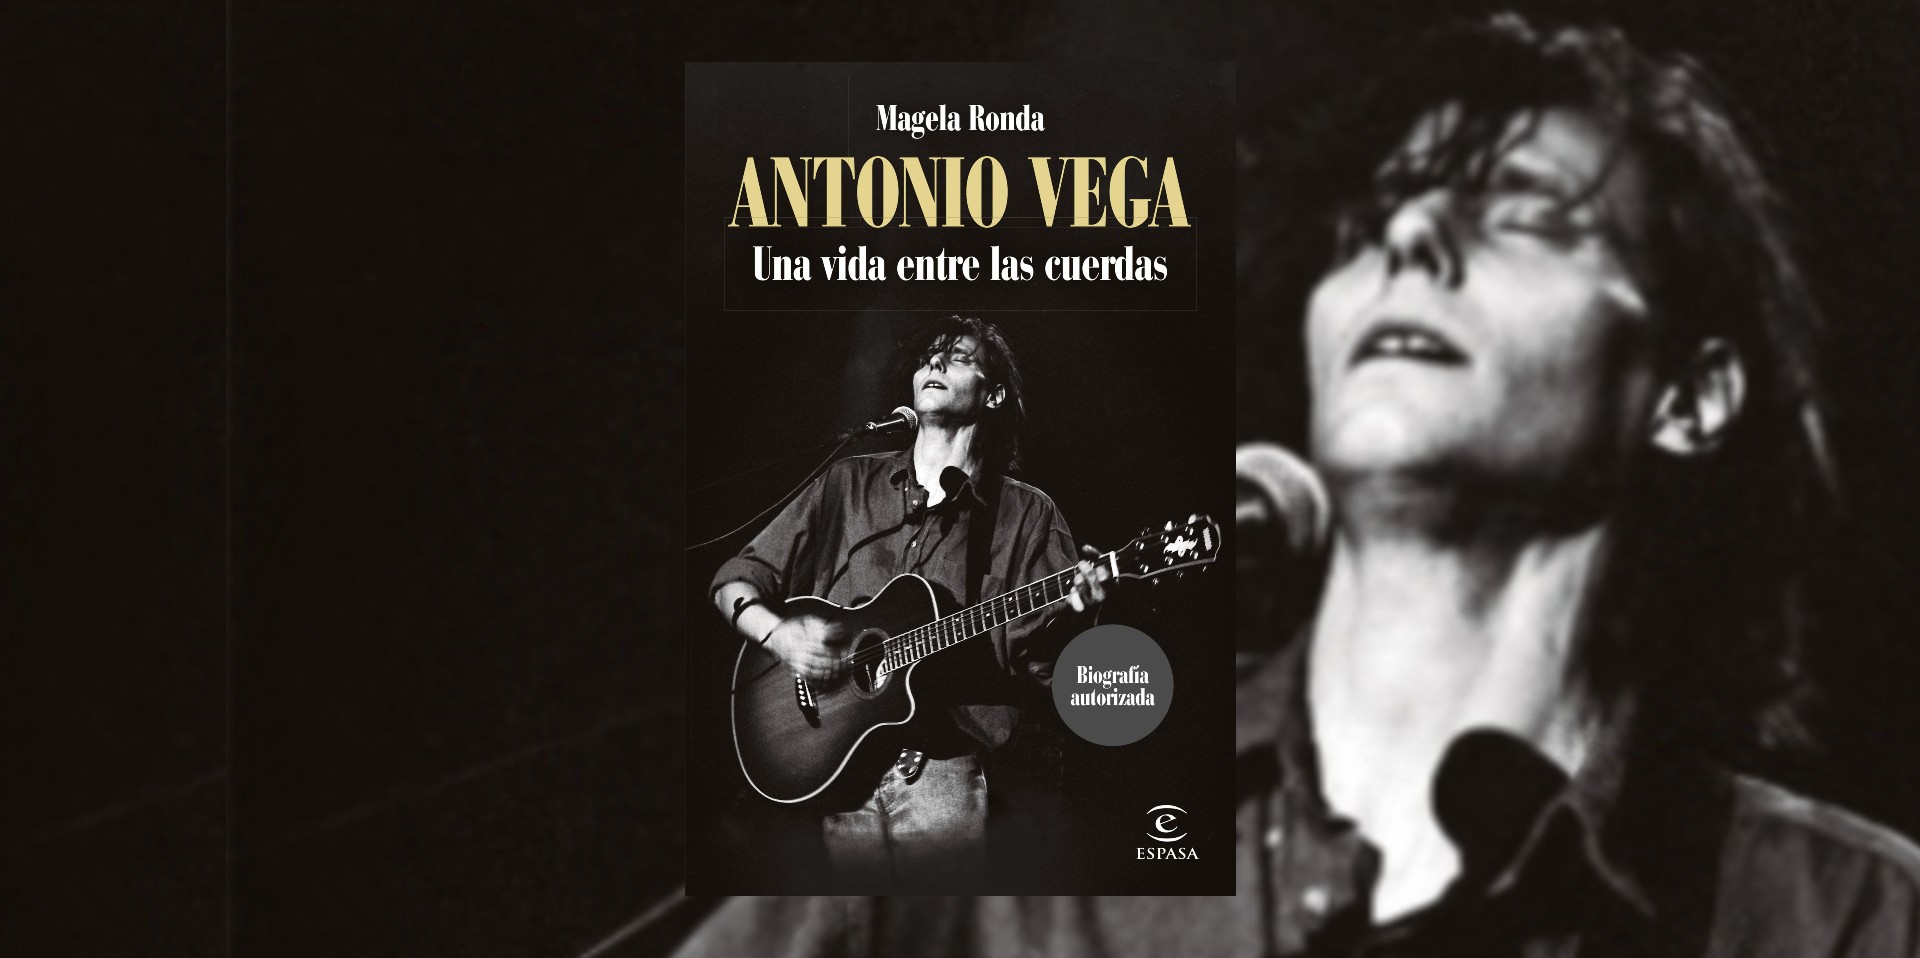 Portada del libro "Antonio Vega. Una vida entre las cuerdas". (Planeta de Libros).